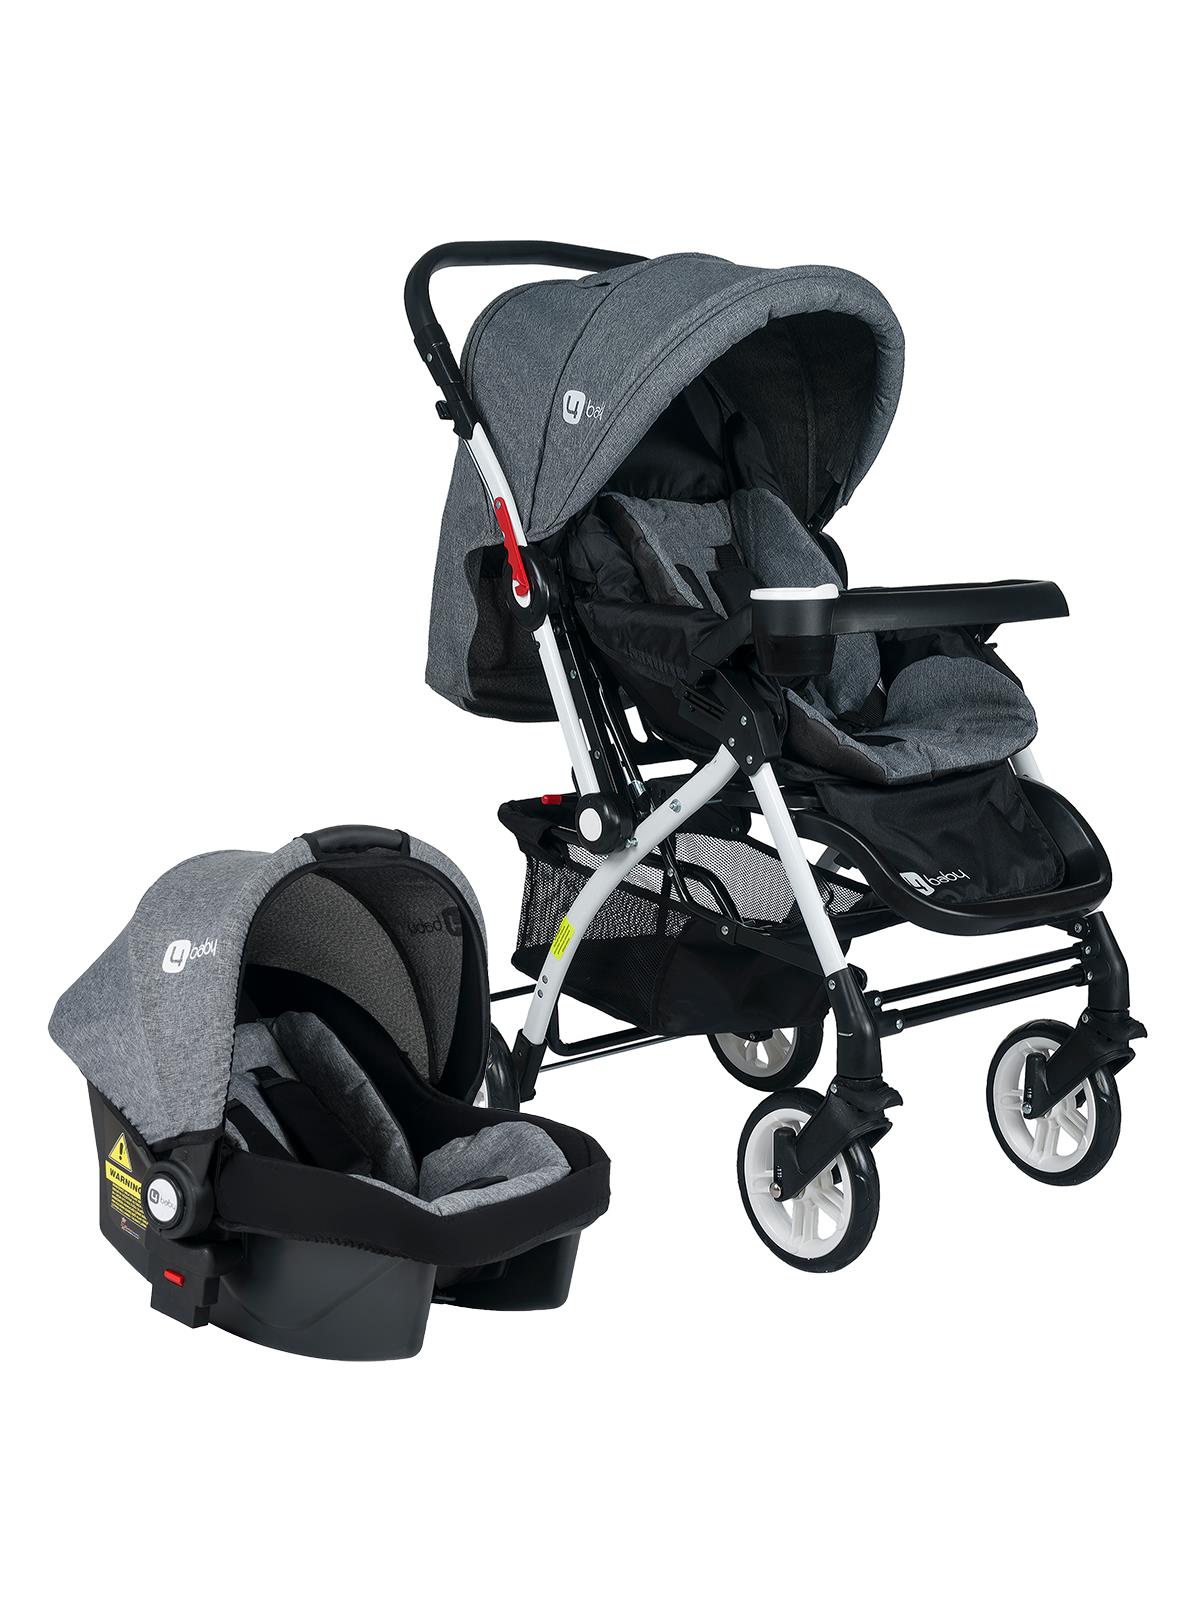 4 Baby Active Travel Sistem Bebek Arabası Gri